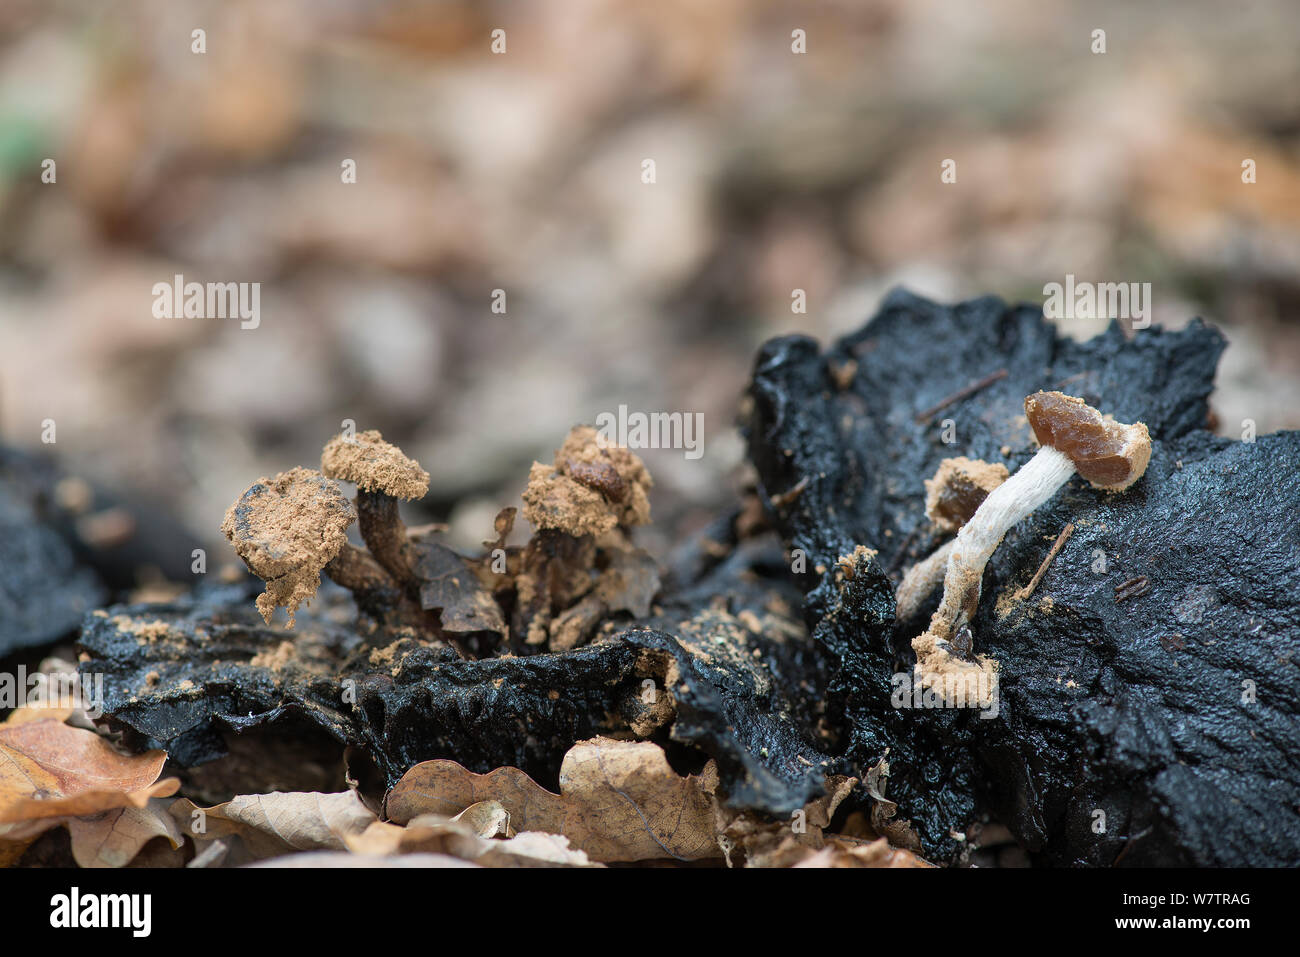 Powdery piggyback toadstool  (Asterophora lycoperdoides) parasitising a rotting Russula fungi, Surrey, England, UK, September. Stock Photo